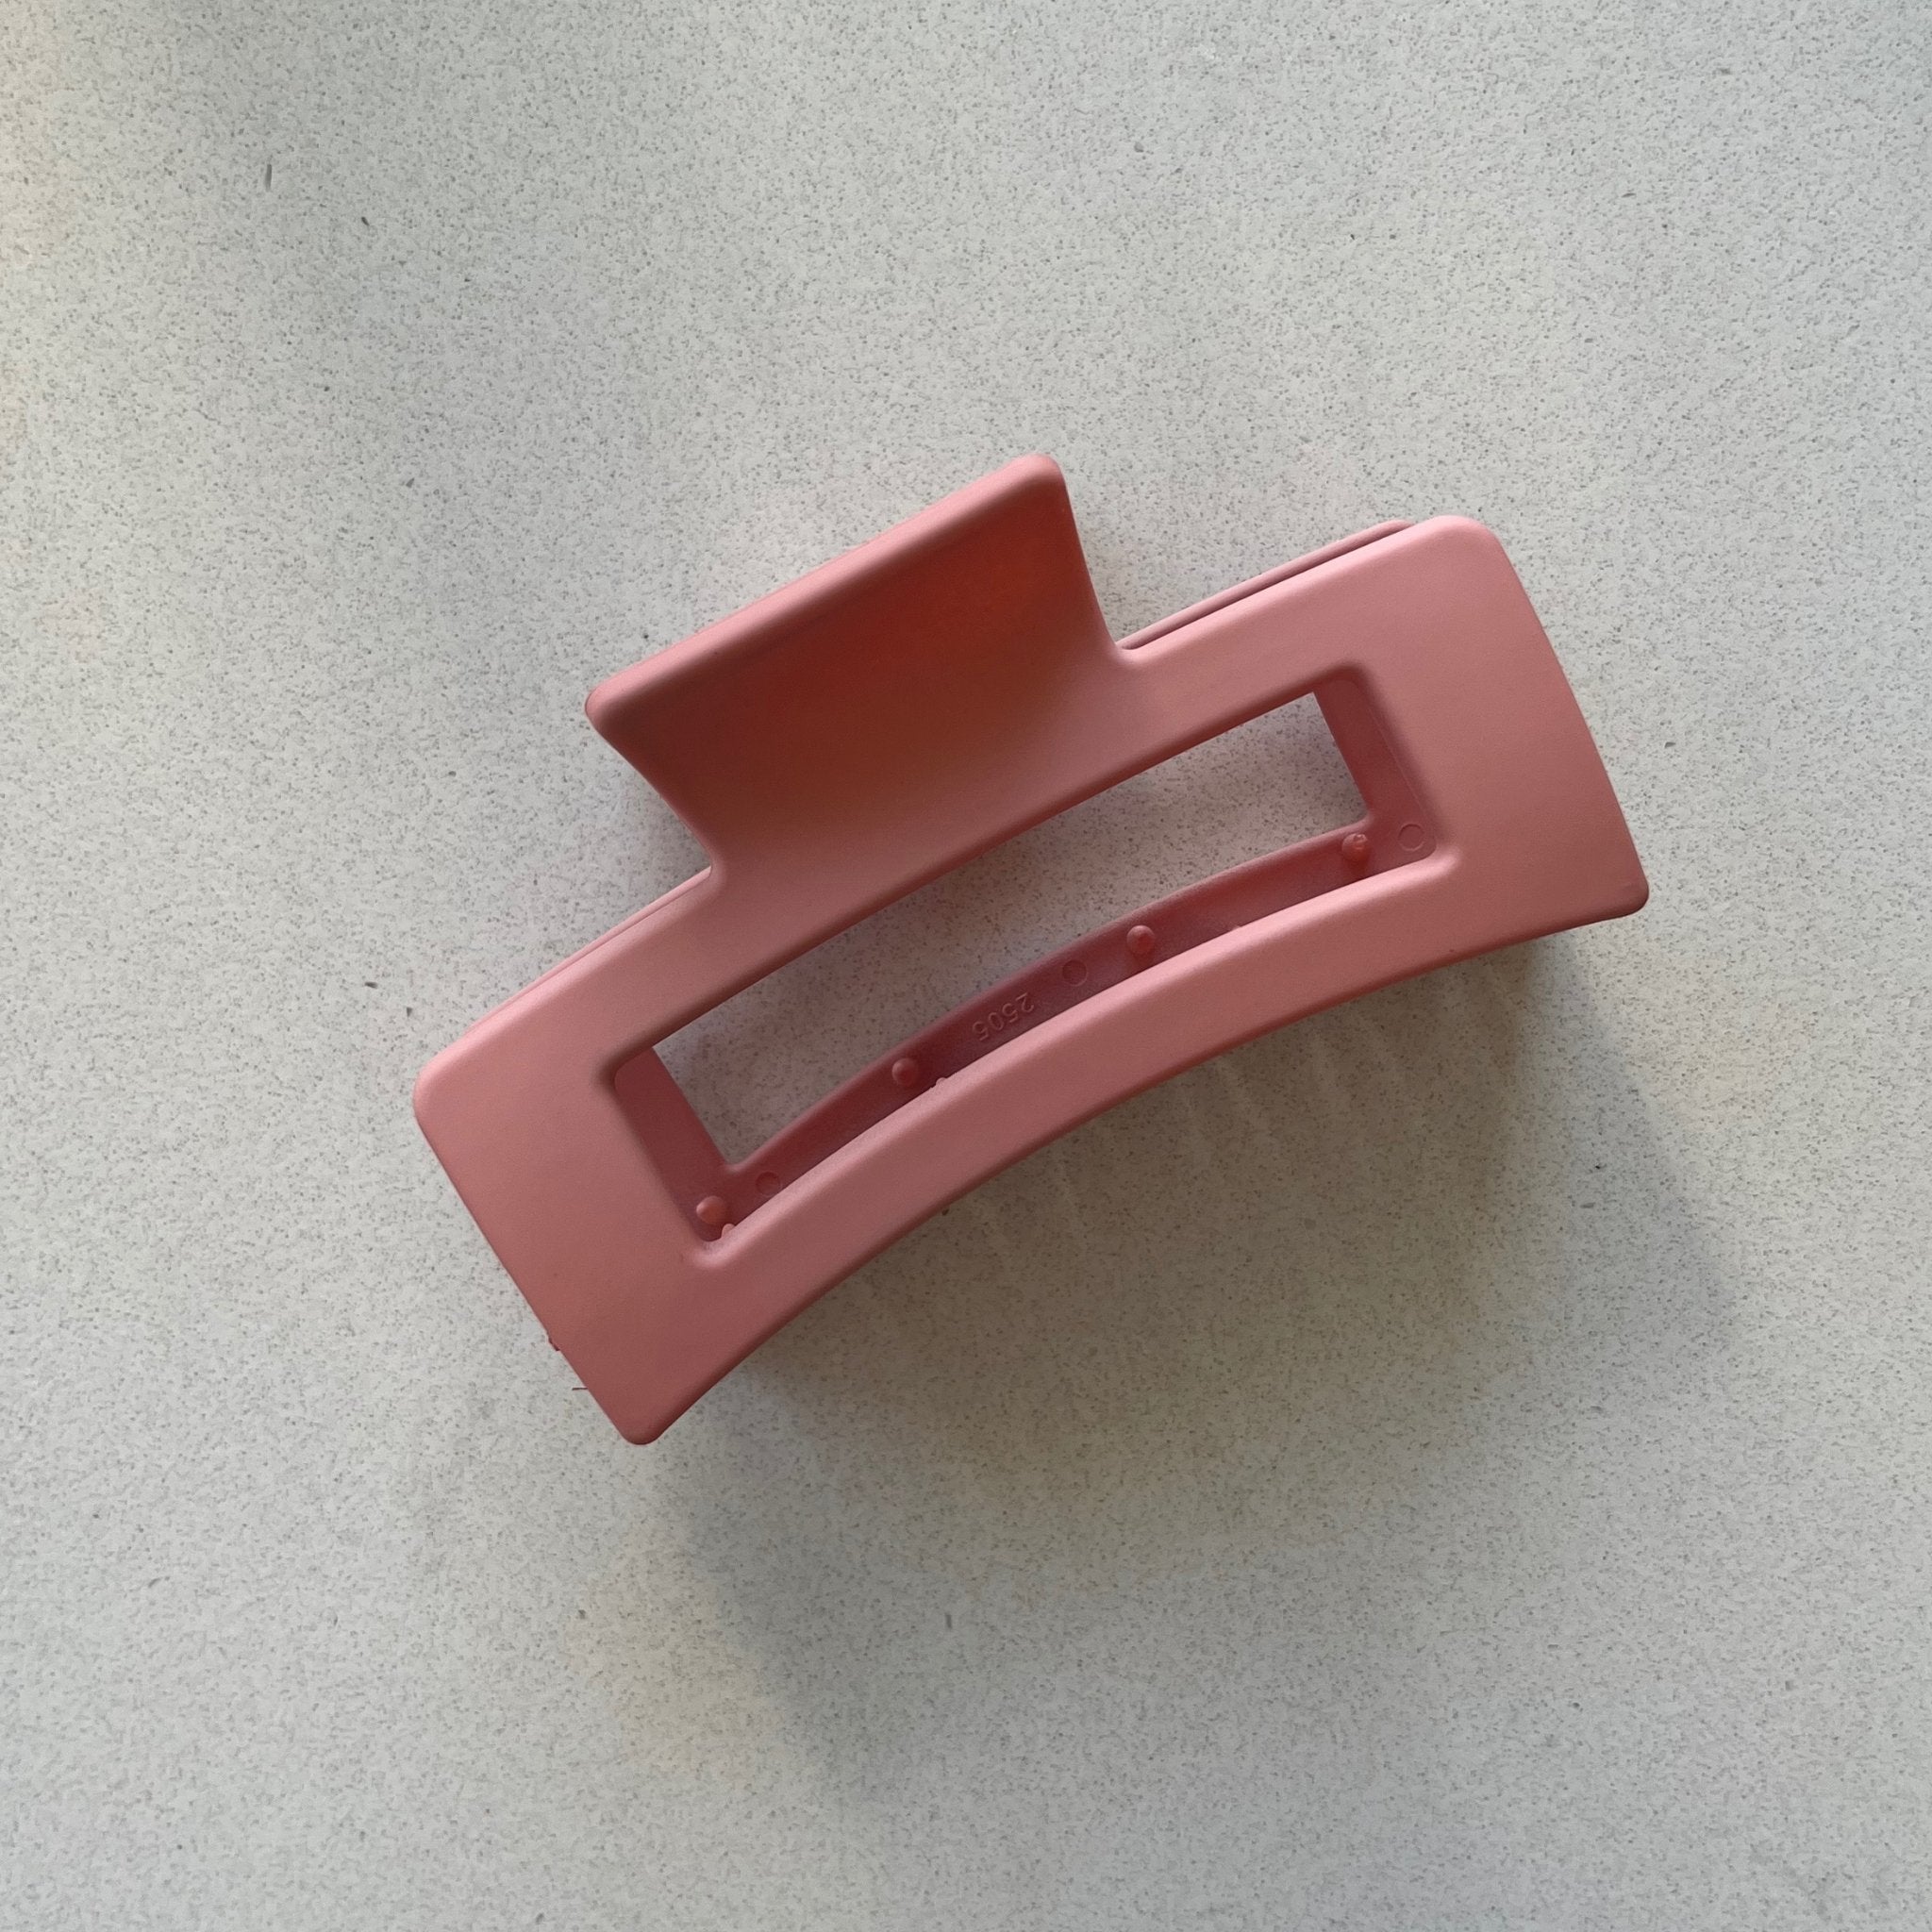 Concept C. Pince Rectangulaire Mate - Rose 10 cm - Concept C. Shop